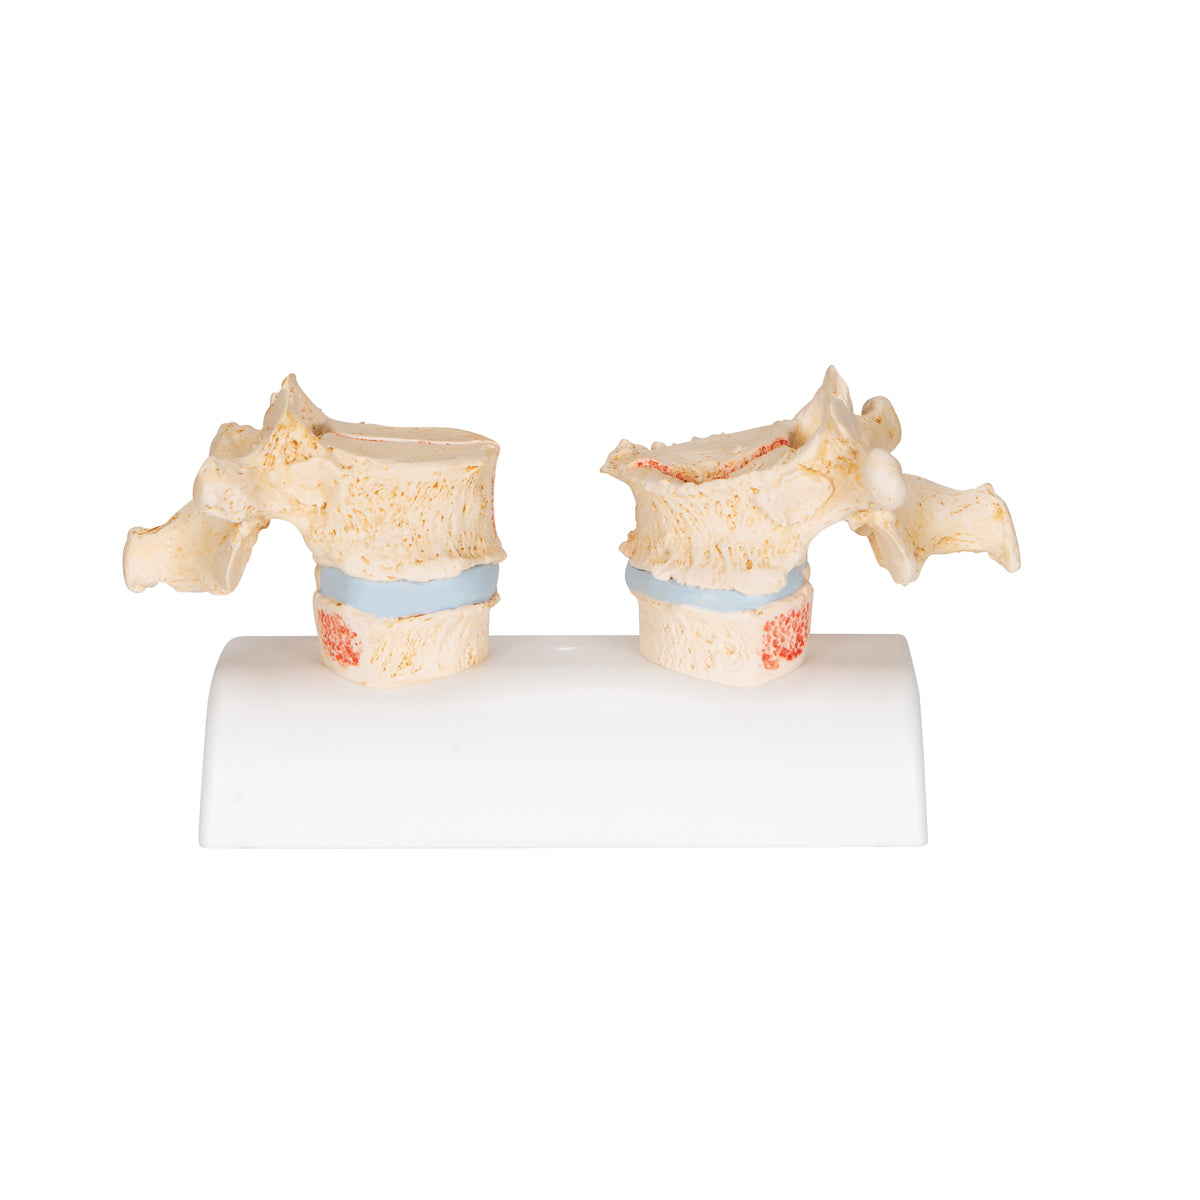 Anatomisk modell av kotor som illustrerar osteoporos vs frisk benvävnad